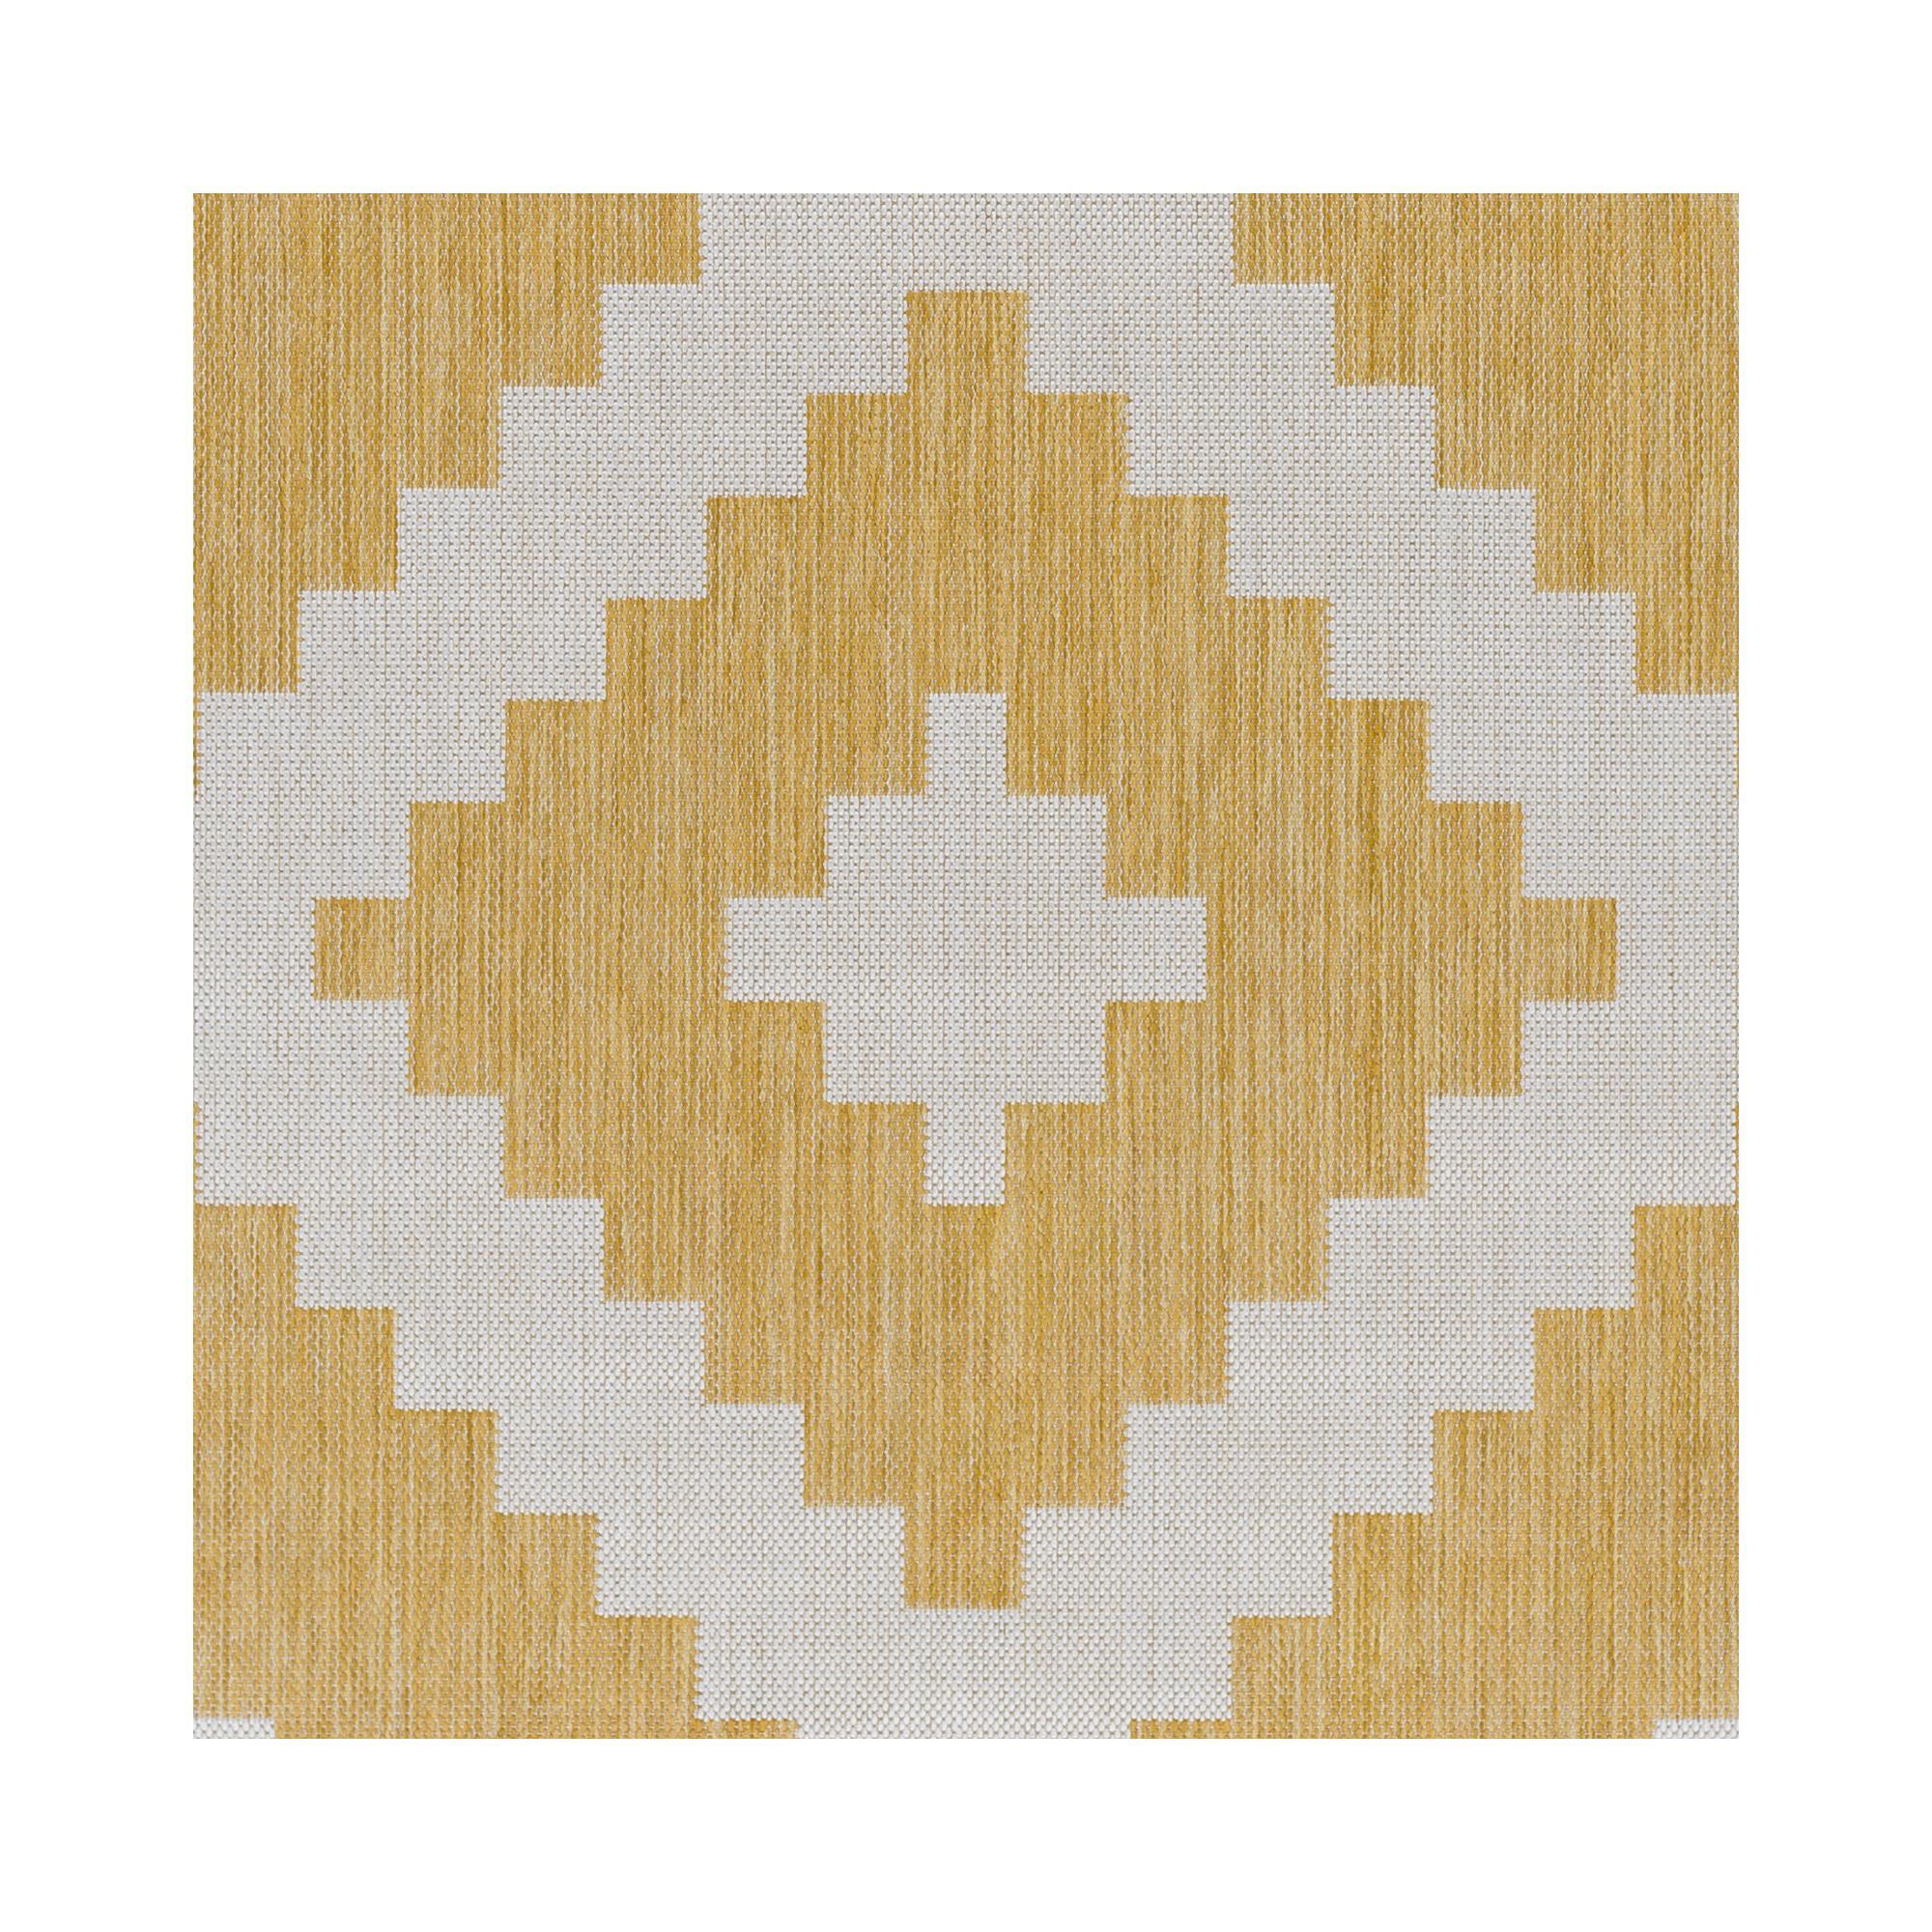 Indoor/outdoor rug yellow 120x160 cm Hespéride  Graphique et polyvalent,  ce tapis Atmosphera s'invitera volontiers dans un univers ethnique chic, en  intérieur comme en extérieur !Un format rectangulaireCe tapis imprimé de  motifs